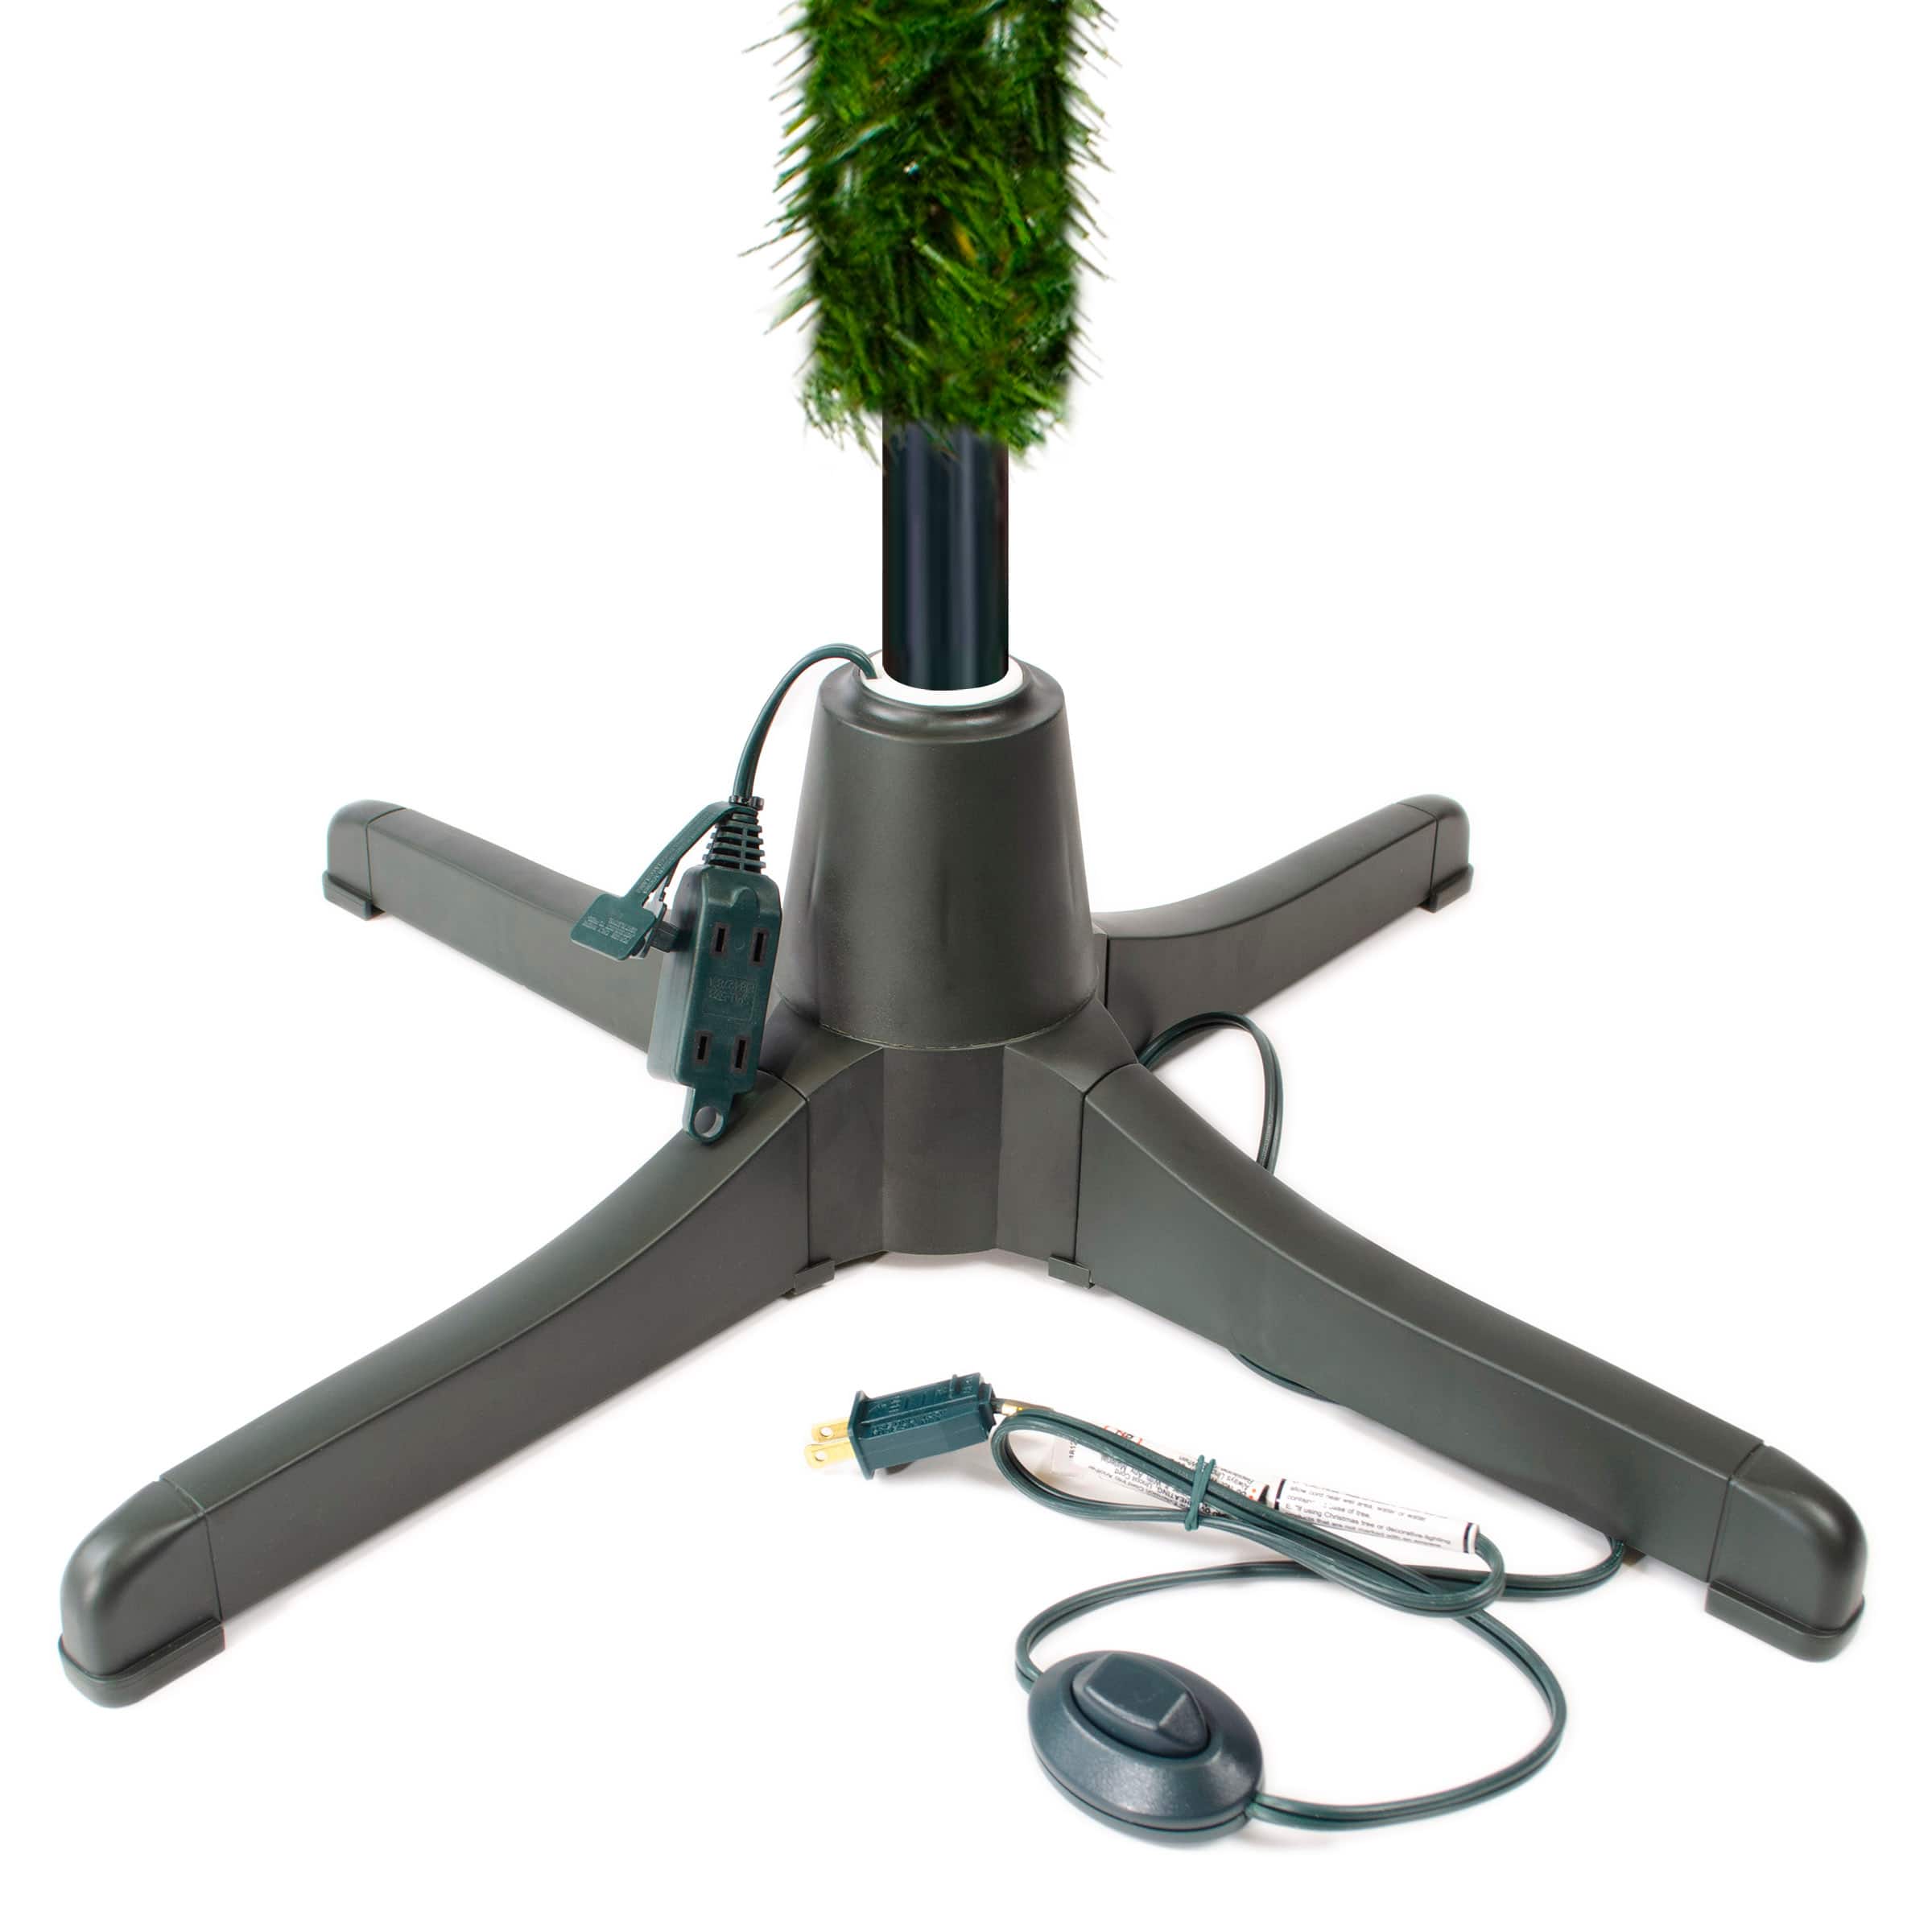 Rotating Christmas Tree Stand